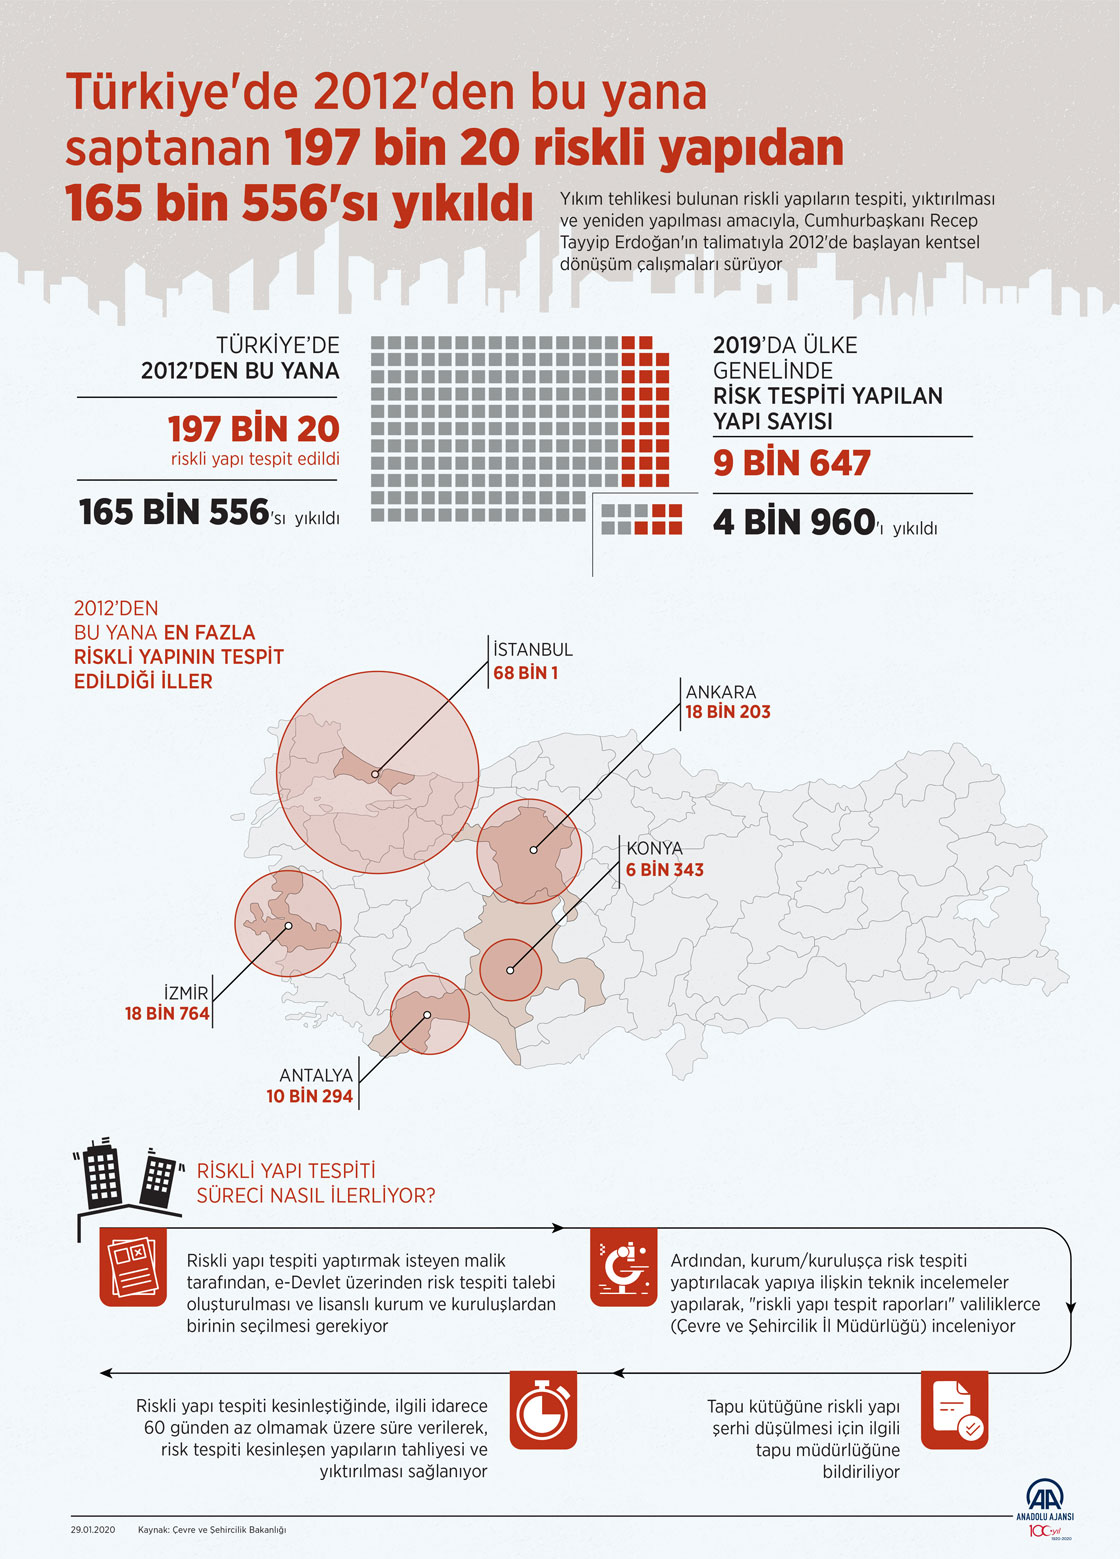  Türkiye'de 2012'den bu yana saptanan 197 bin 20 riskli yapıdan 165 bin 556'sı yıkıldı